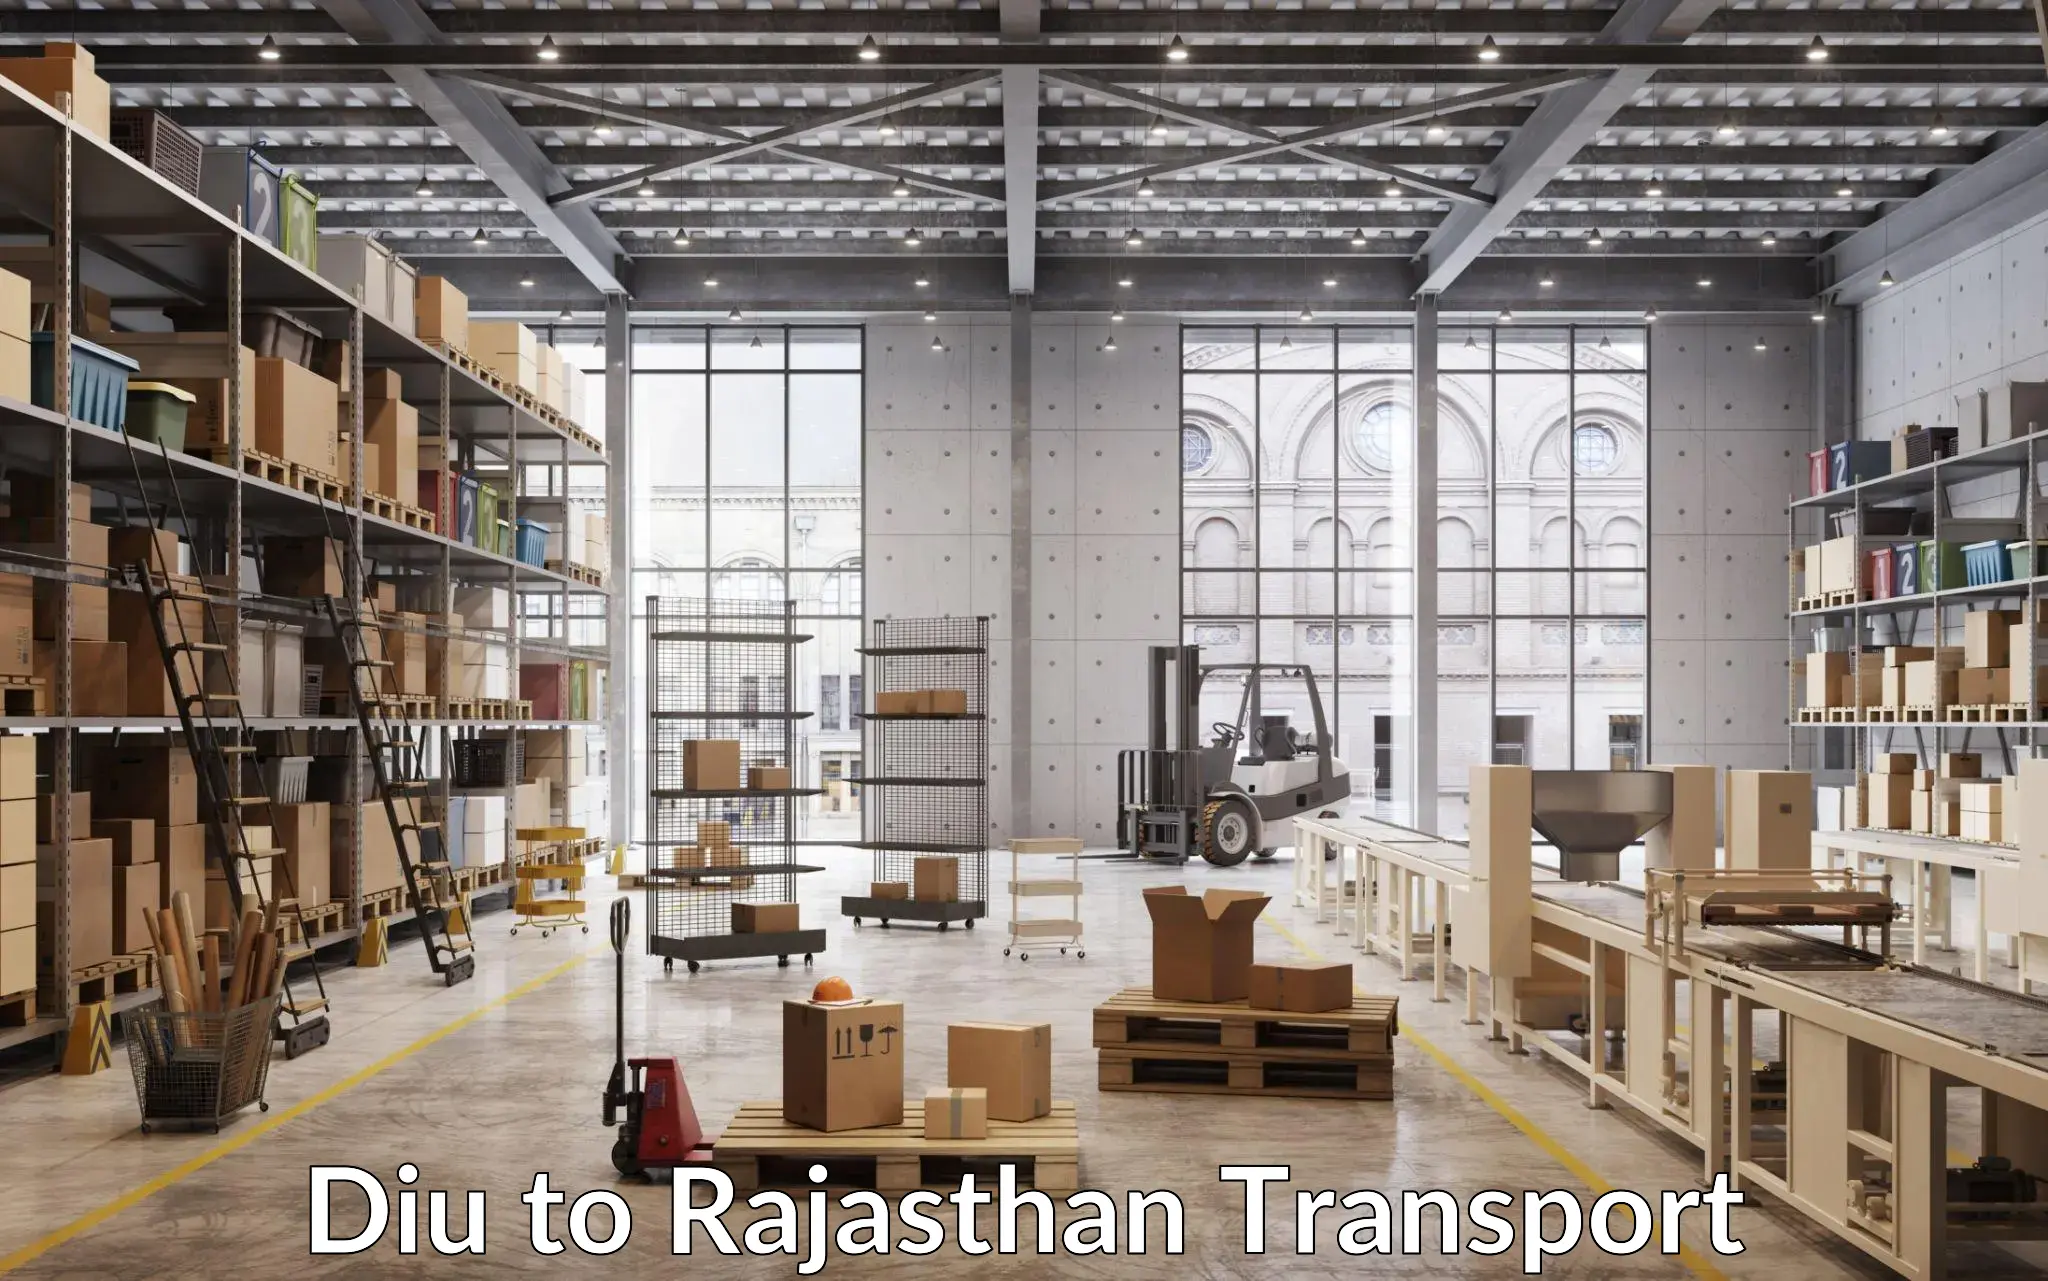 Truck transport companies in India Diu to Keshoraipatan